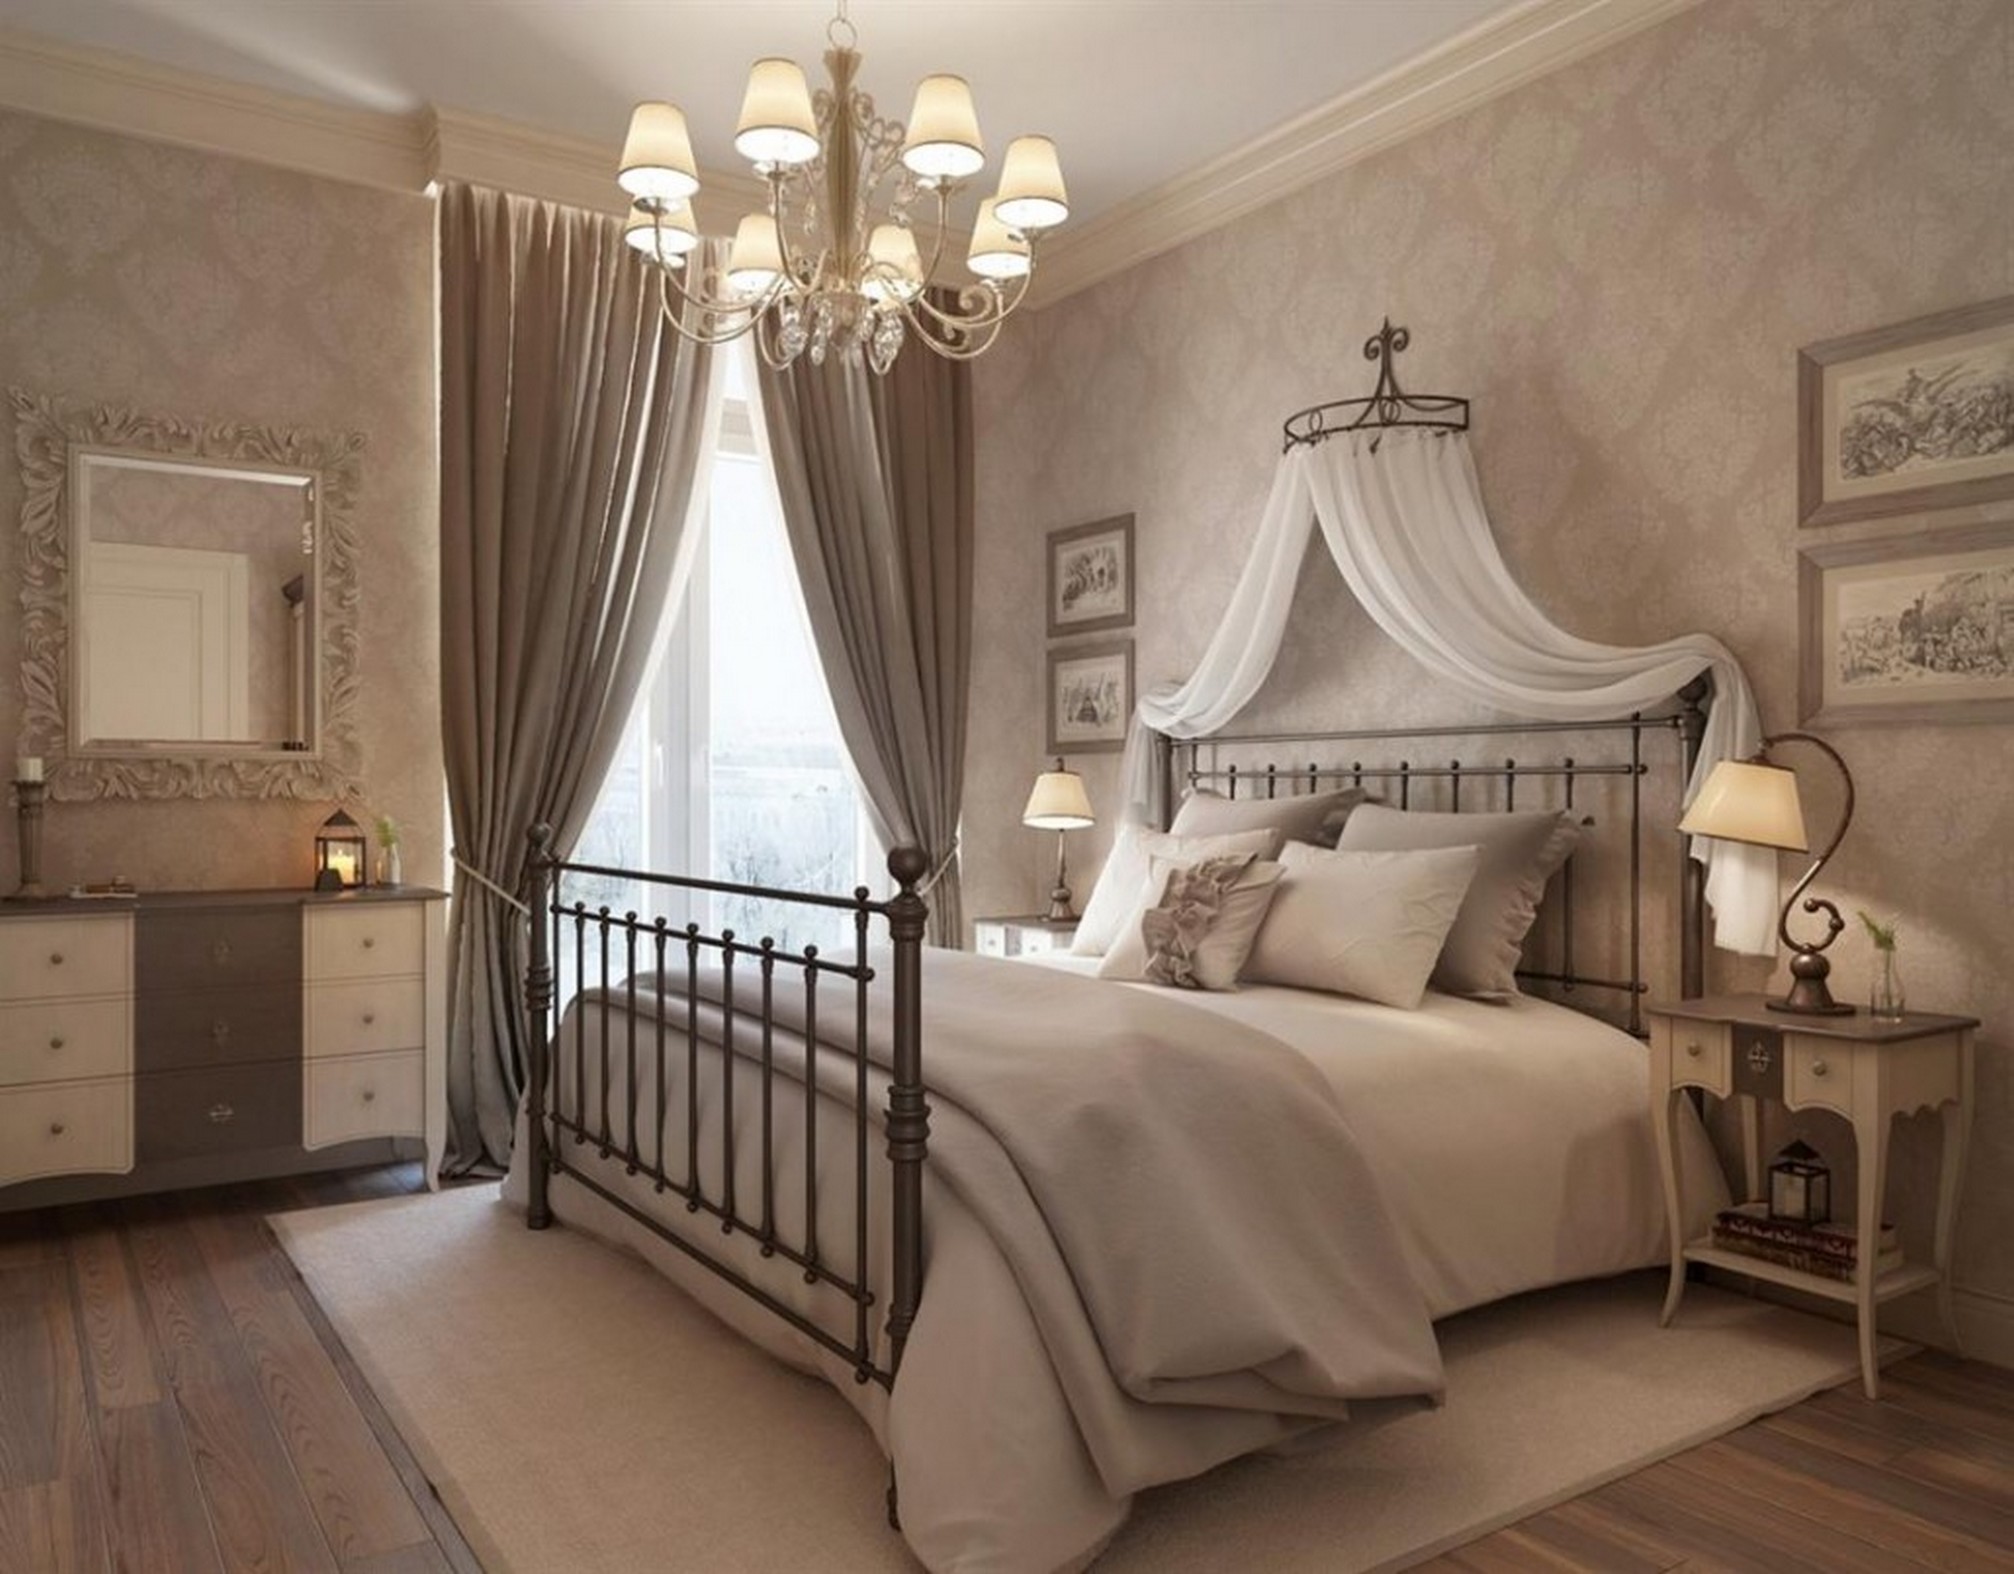 incroyable-chambre-marron-rideau-chambre-pour-luxe-chambre-design-utilisant-métal-photo-de-nouveau-à-propriété-2017-luxe-chambre-designs-marron